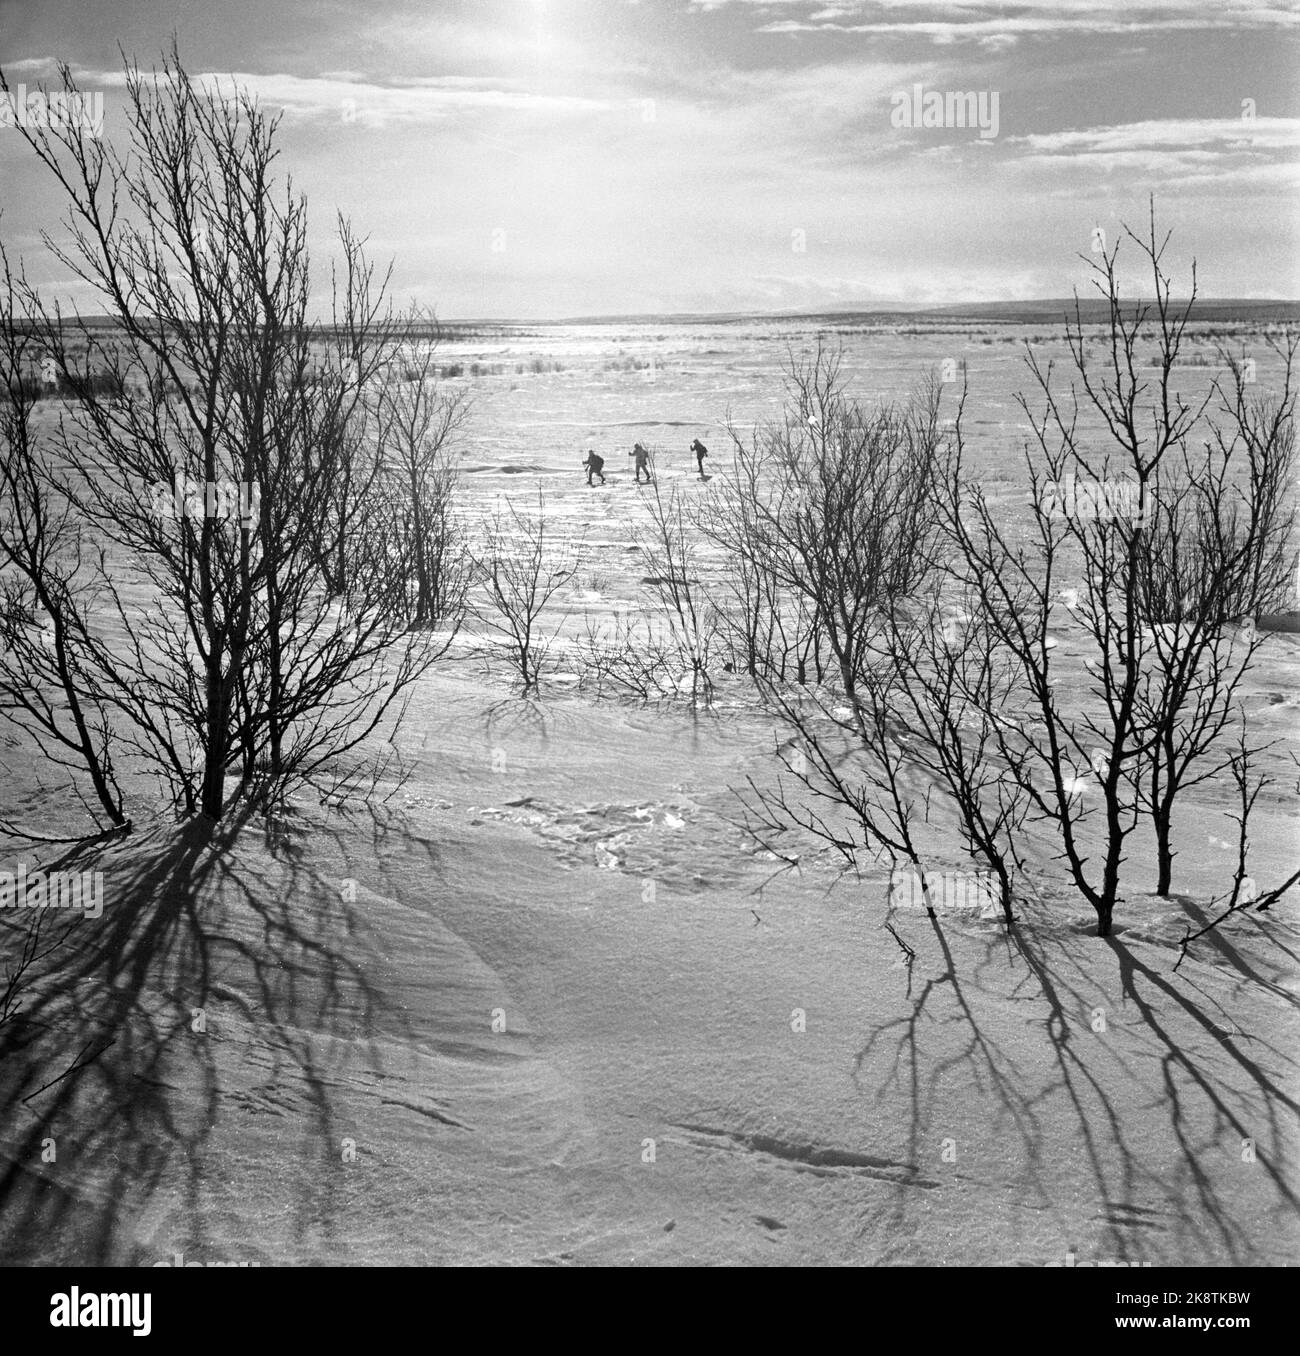 Finnmark à l'hiver 1949. Chasse au loup sur Finnmarksvidda. Le Ministère de l'agriculture a alloué de l'argent à la chasse aux loups à Finnmark après que de grandes troupeaux de rennes aient été endommagés par des loups. L'action a fait appel à des chasseurs locaux et loués, ainsi qu'à des vols et à des wagons de ceinture. Voici trois chasseurs sâmes sur le chemin au-delà de la prairie. Photo: Sverre A. Børretzen / actuel / NTB Banque D'Images